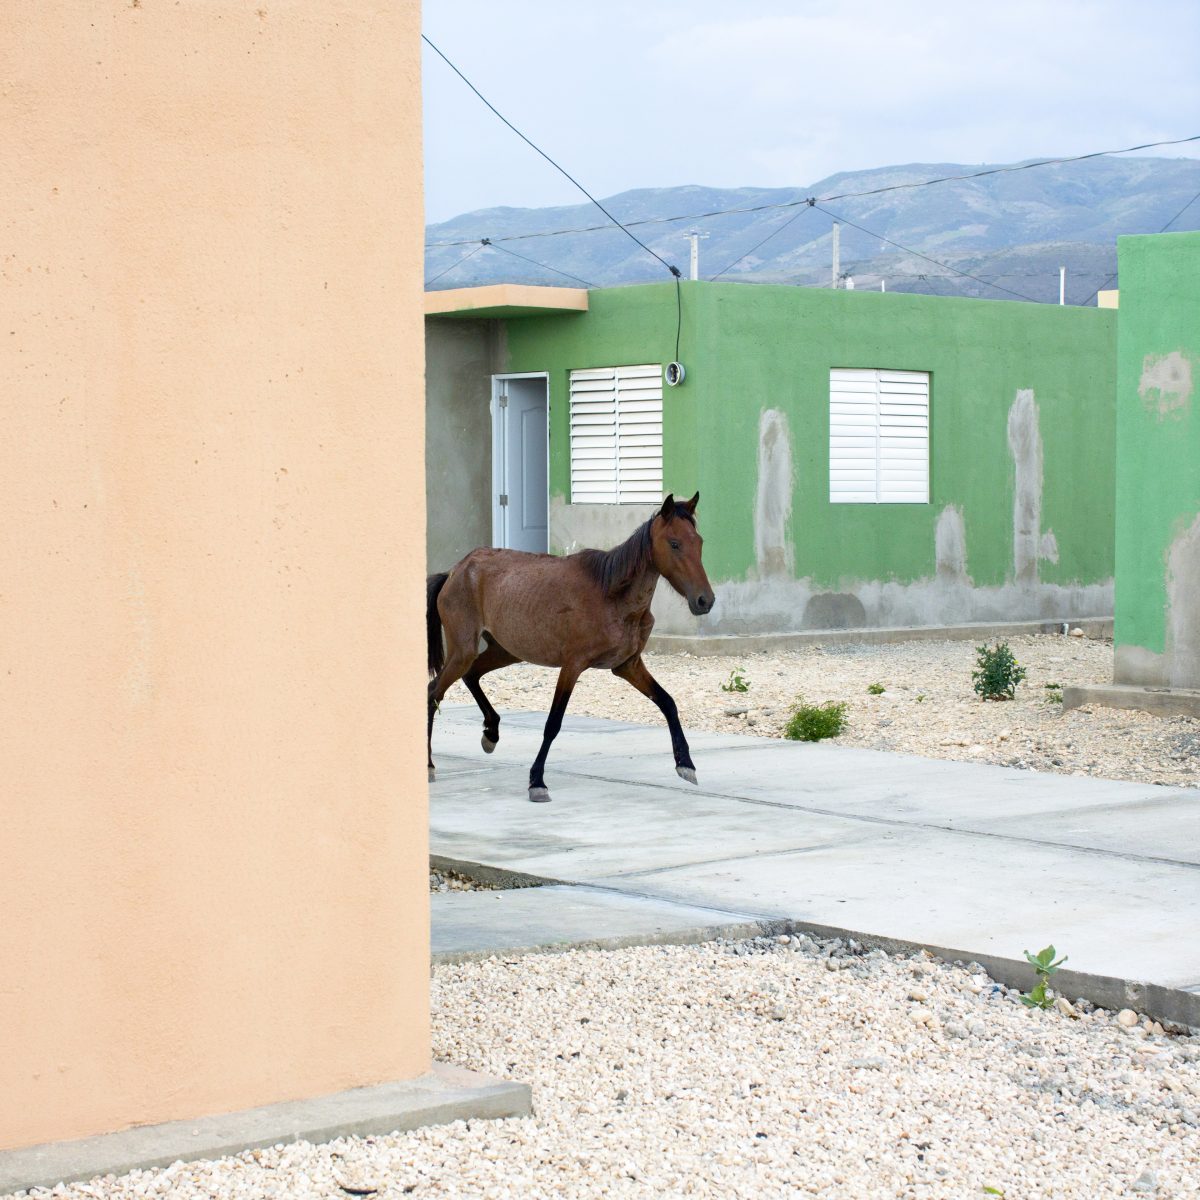 Extrait de "Haïti", © Corentin Fohlen 